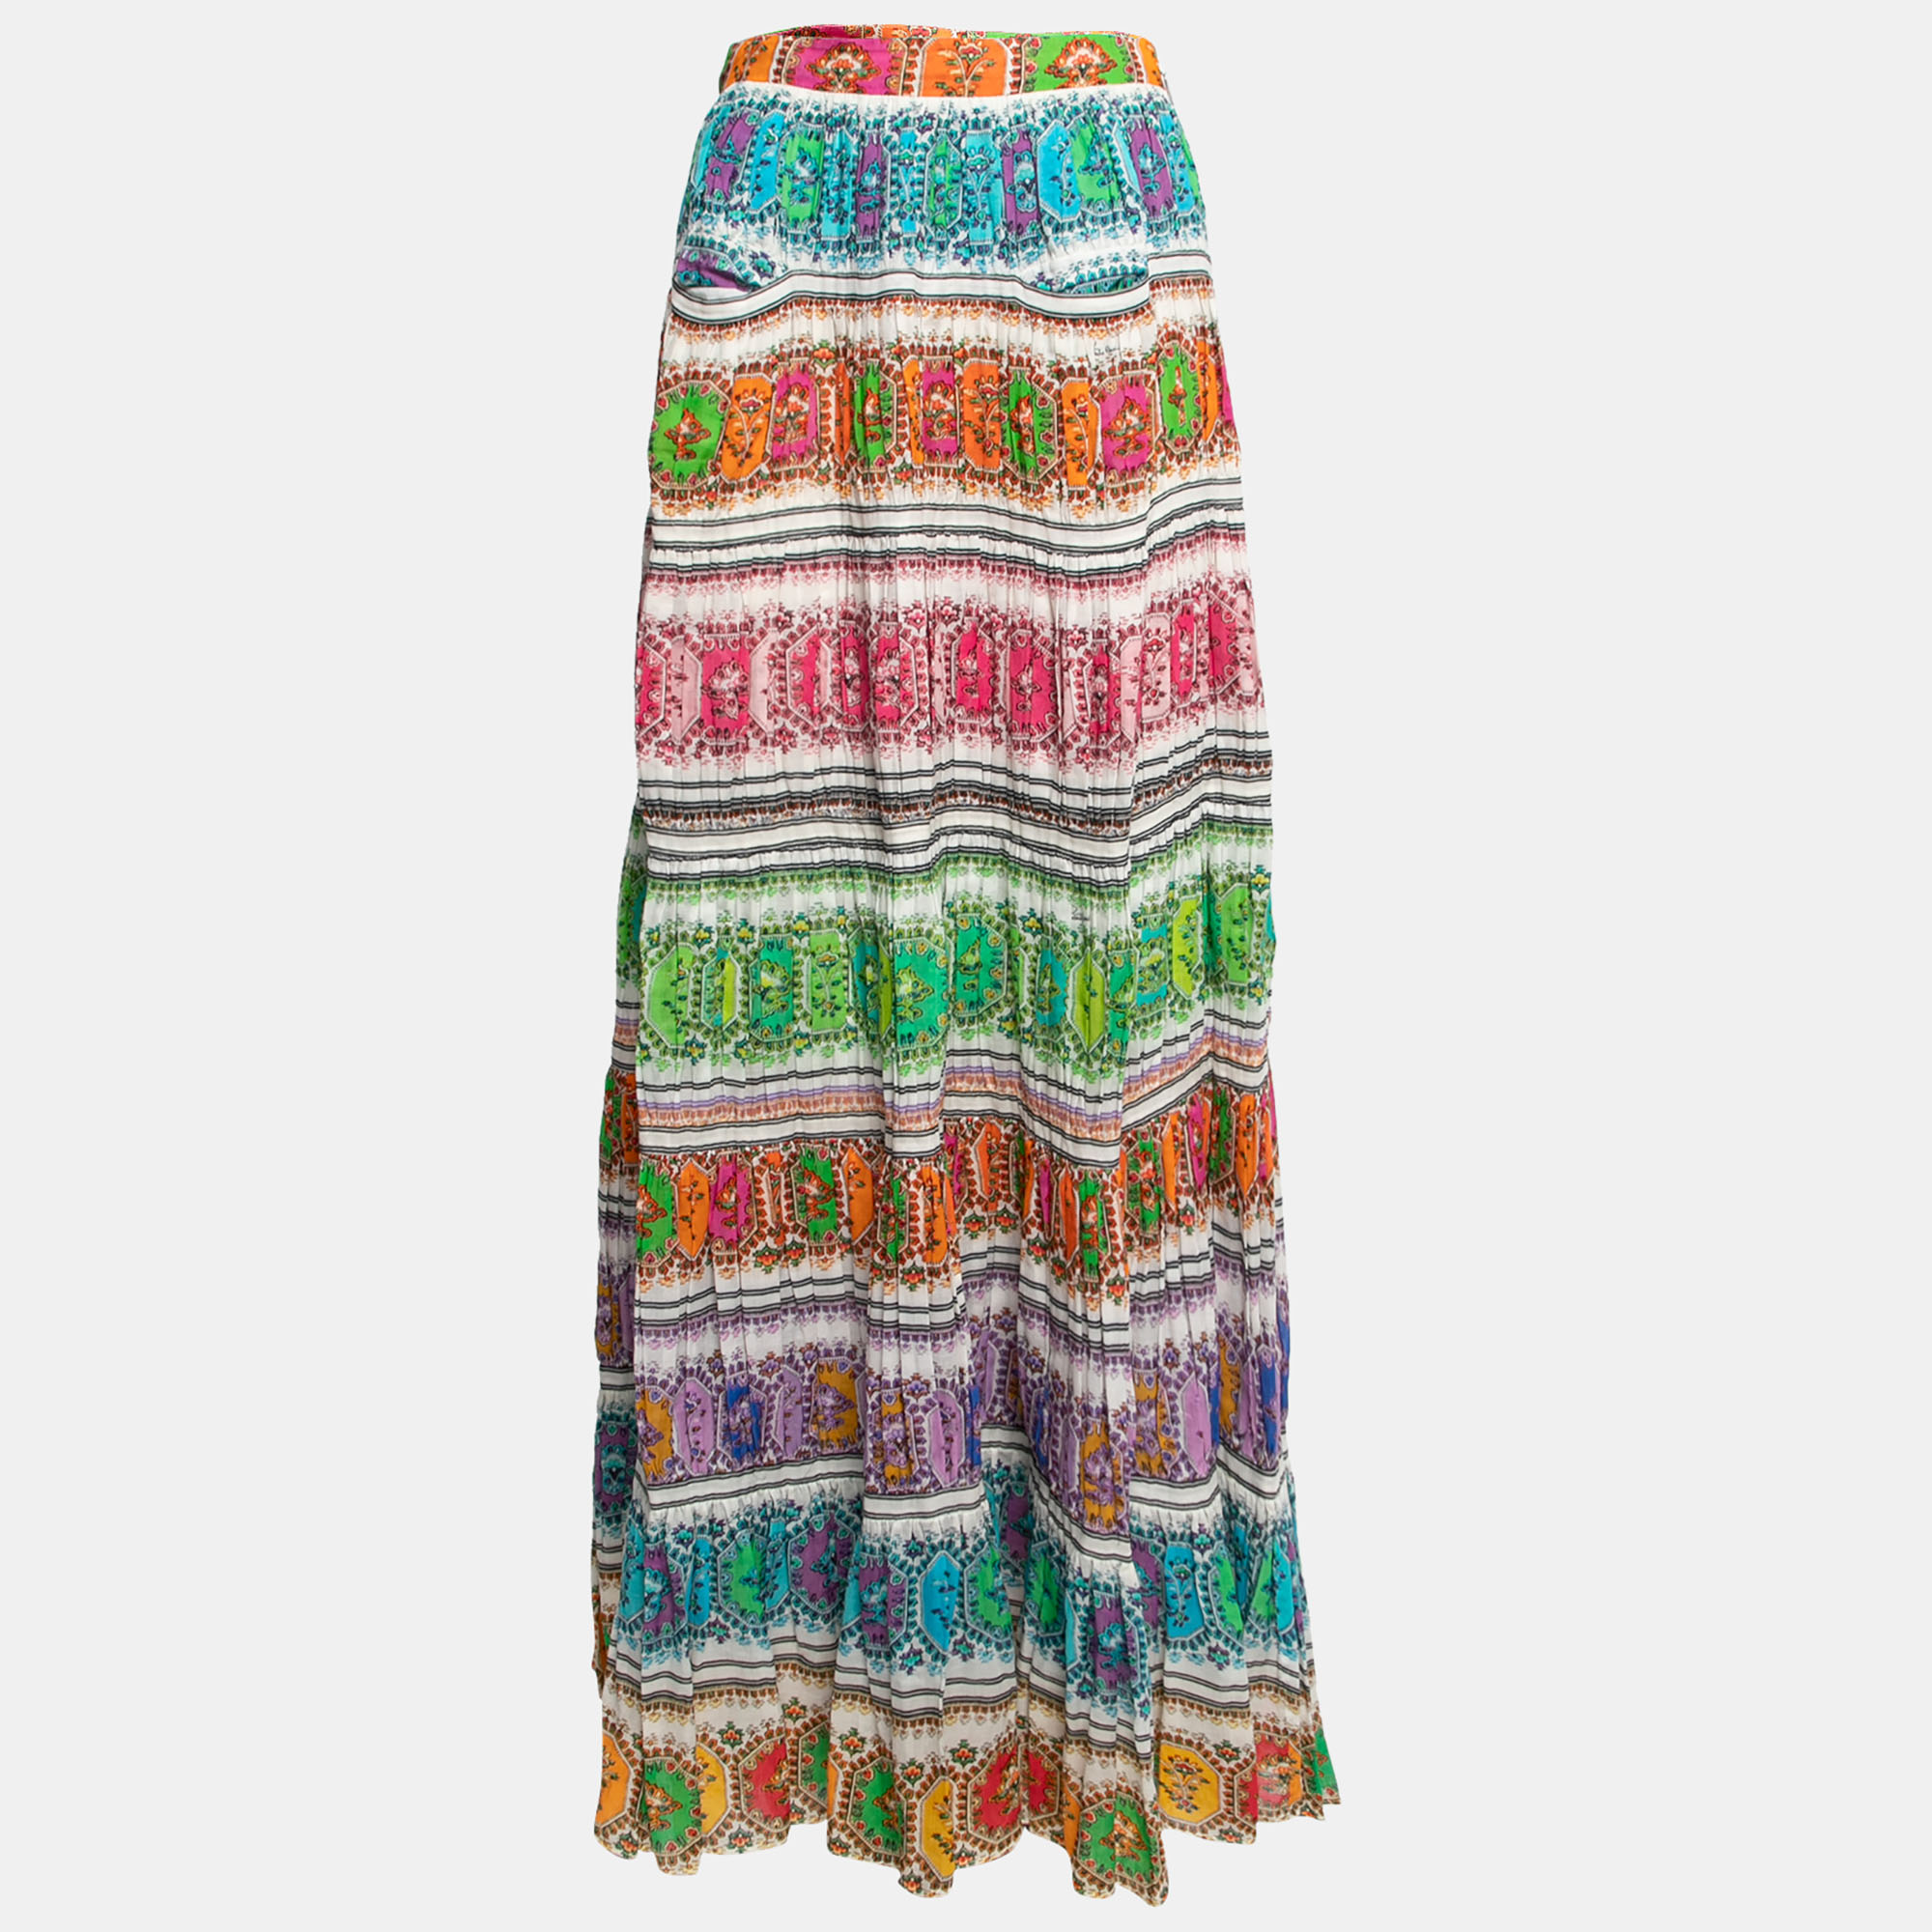 Roberto Cavalli Multicolor Printed Cotton Maxi Skirt L